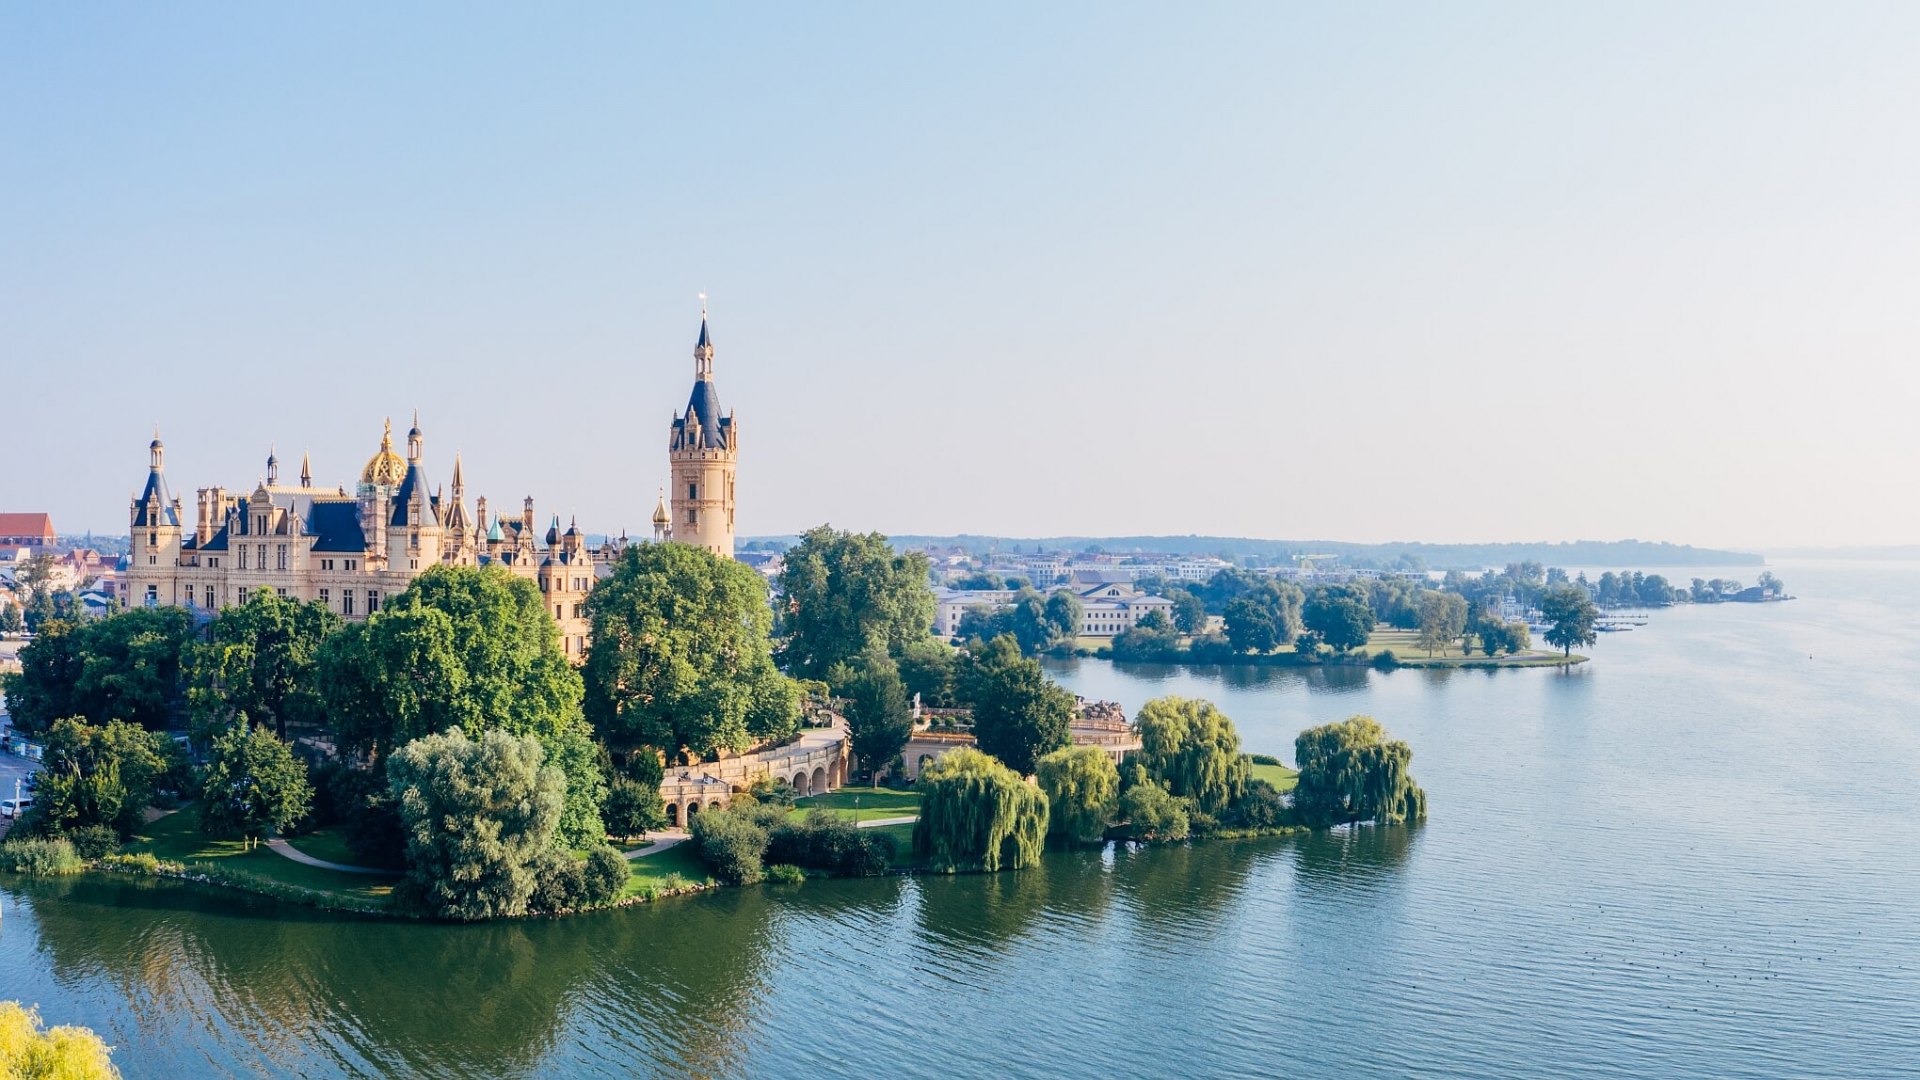 Schwerin Castle is located on an island in Lake Schwerin, © TMV/Gänsicke